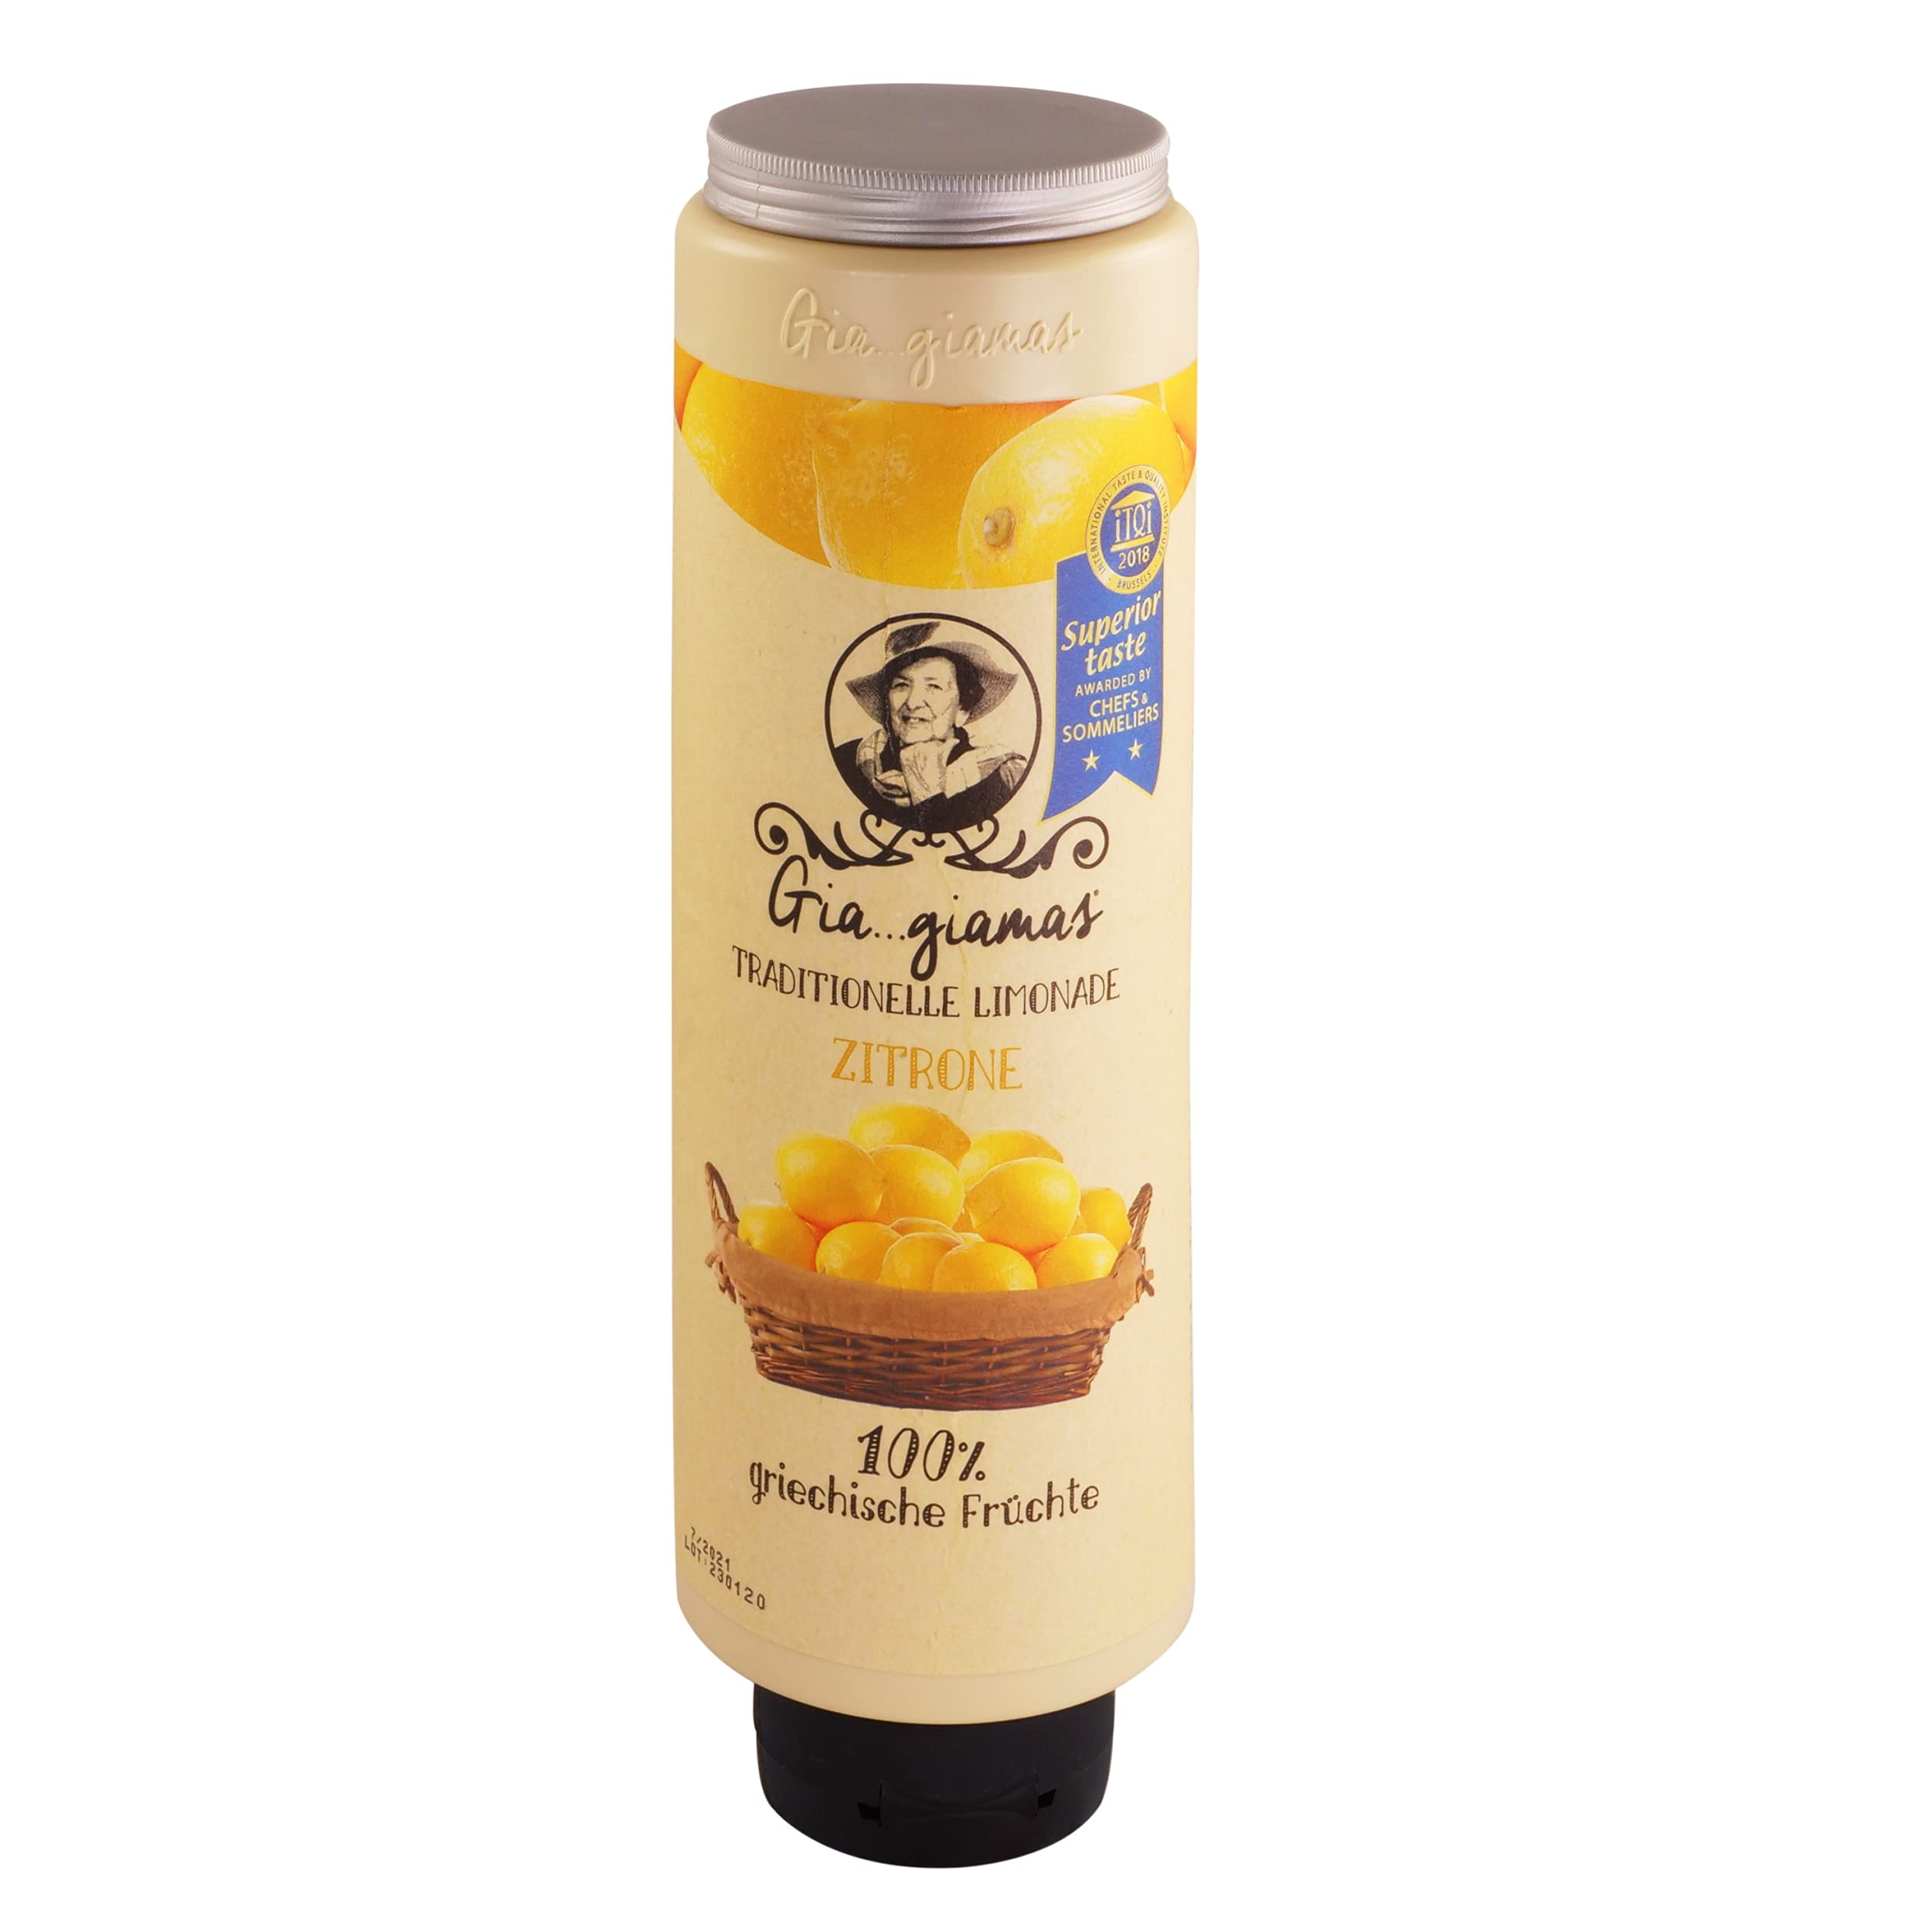 Giagiamas Getränkesirup für Wassersprudler | Zitrone | Vegan | 1300gr. | ohne Konservierungsstoffe